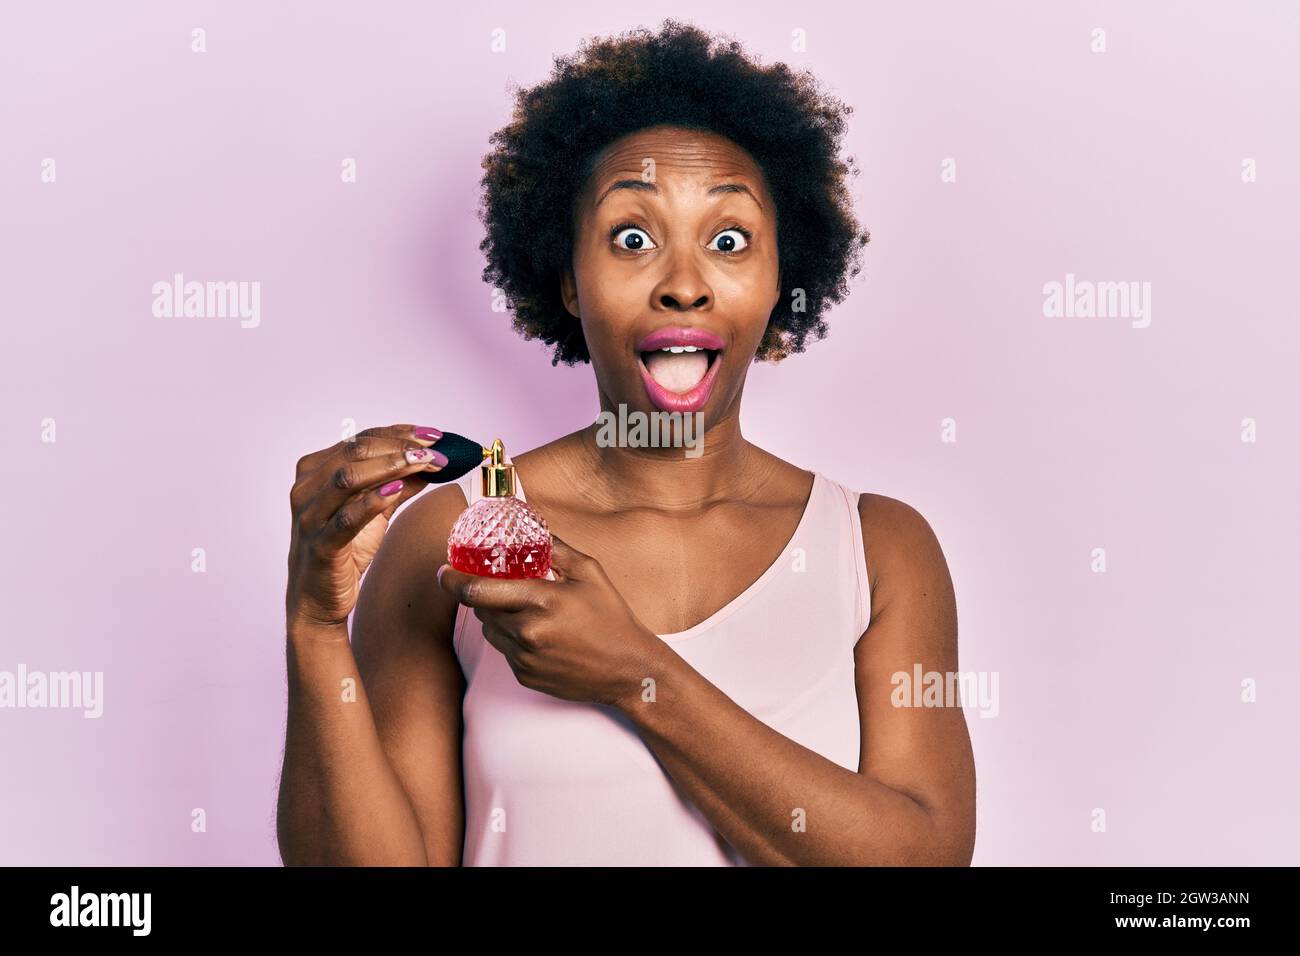 Junge afroamerikanische Frau mit Parfüm feiert verrückt und erstaunt über den Erfolg mit offenen Augen schreiend aufgeregt. Stockfoto